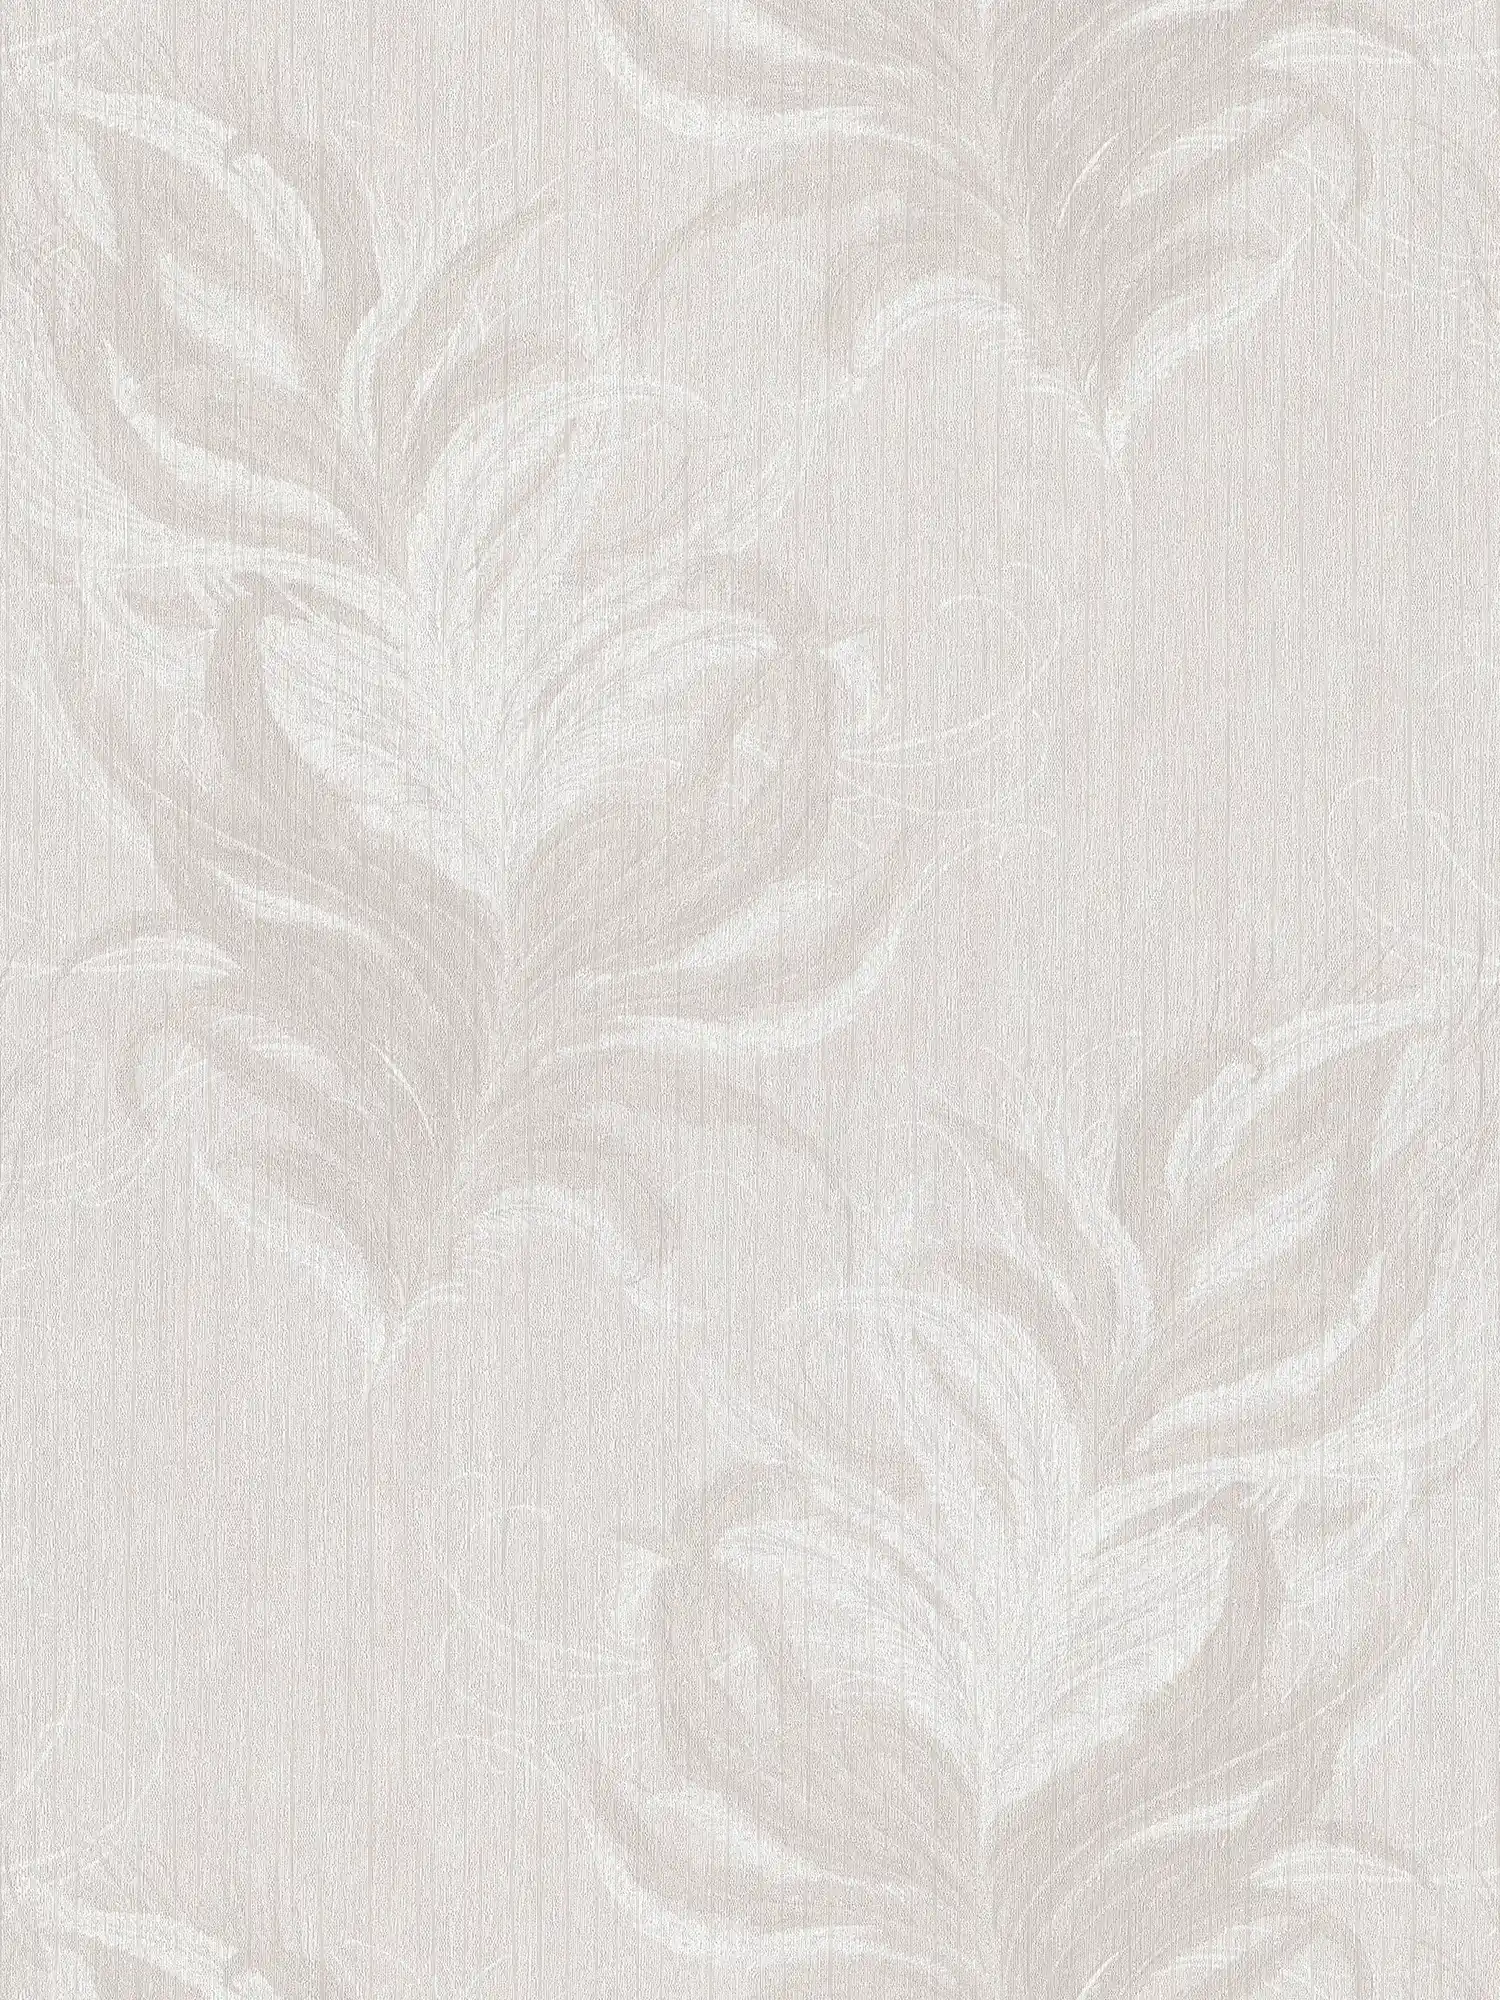         Vliestapete mit Federn Design & Struktur Glanzeffekt – Weiß, Grau
    